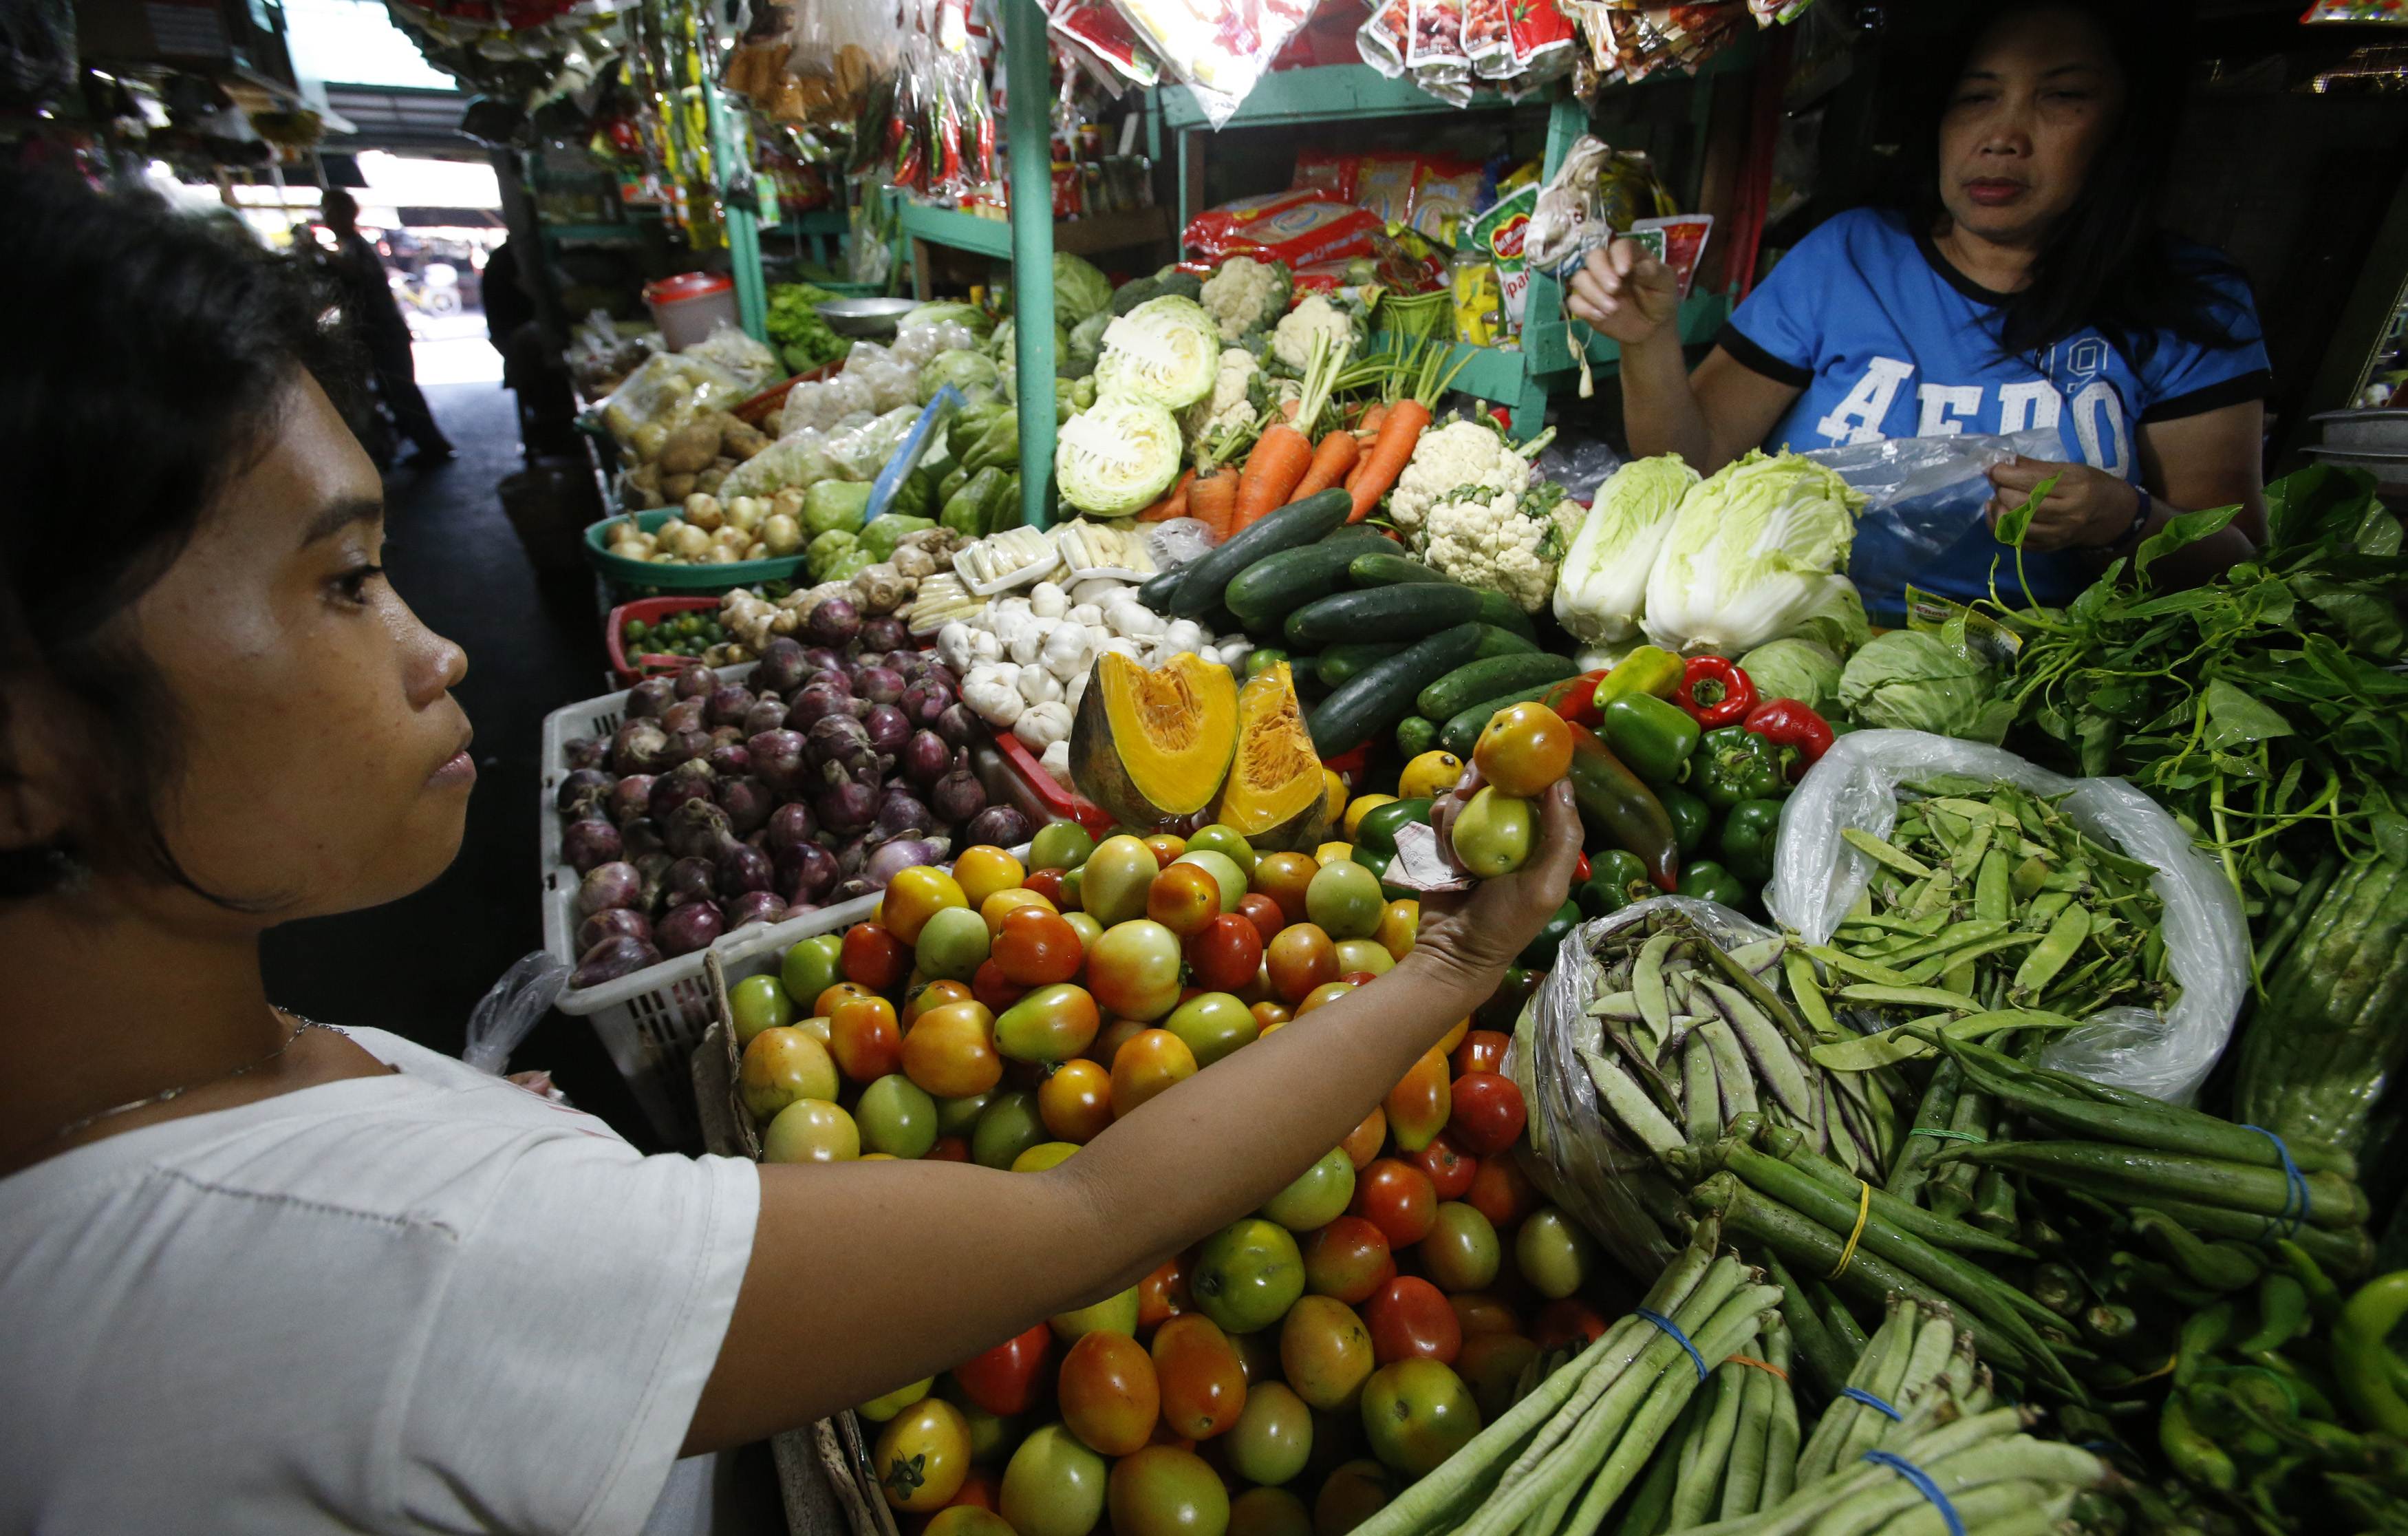 El índice de precios de los alimentos bajó por primera vez en 3 meses, según la FAO